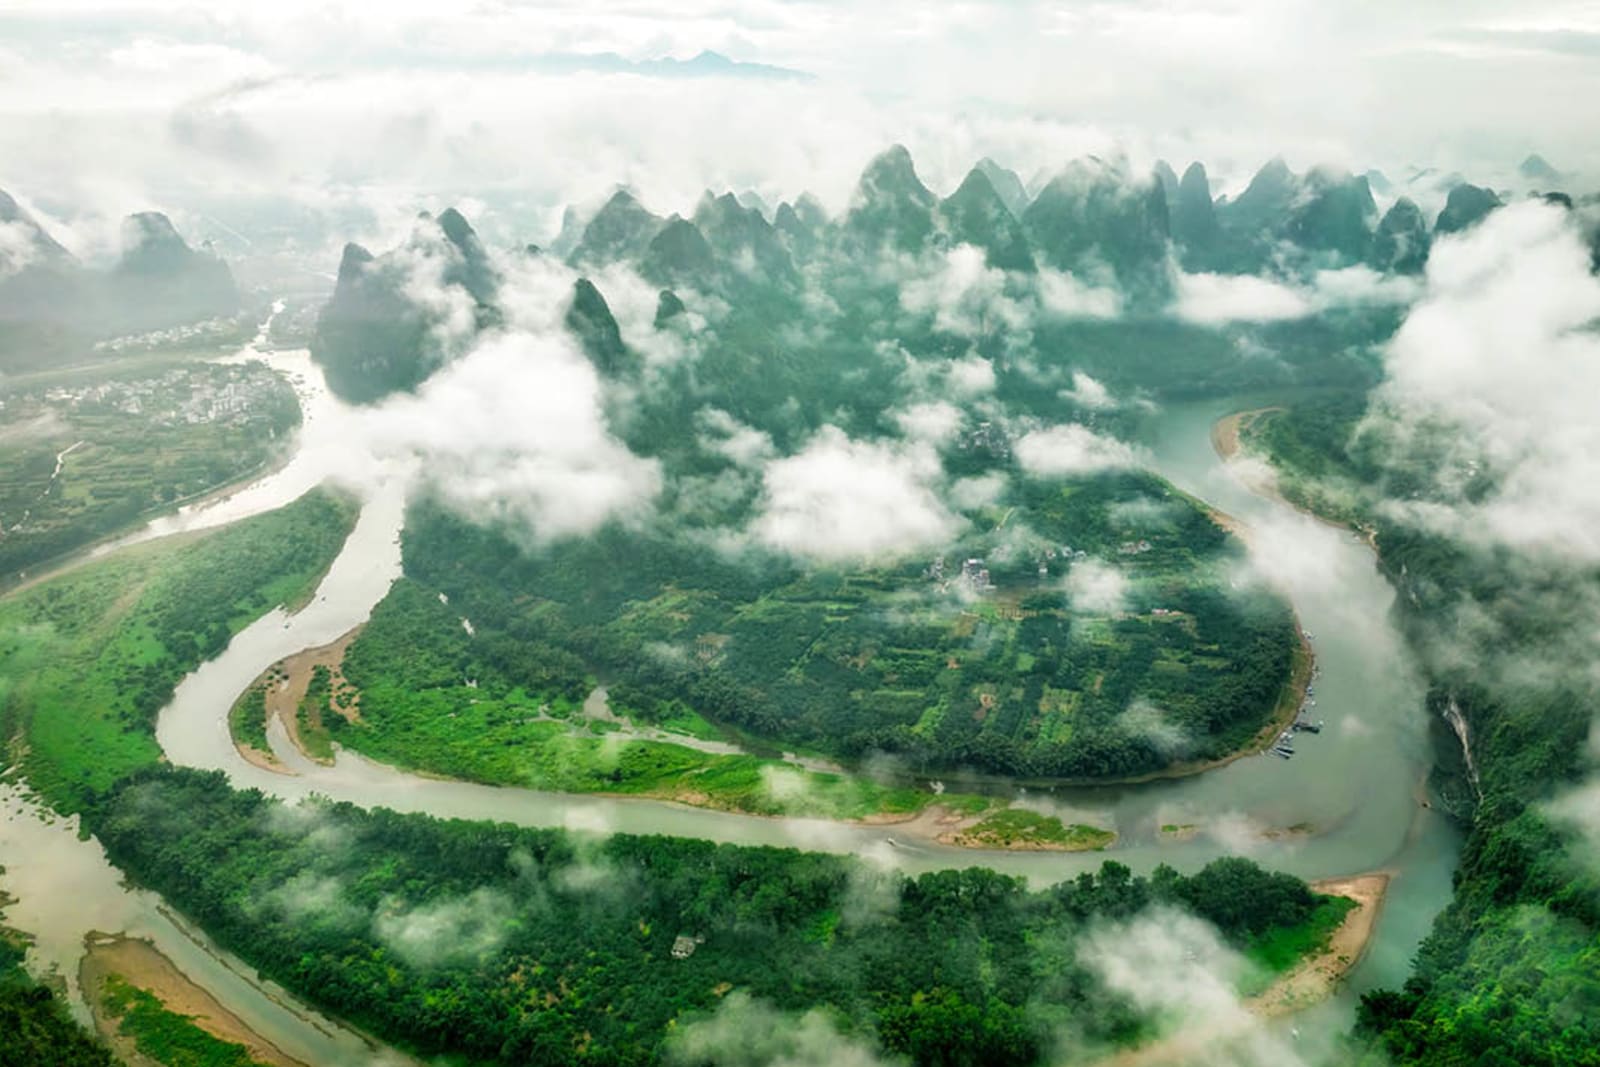 Guilin and Lijiang River National Park, China